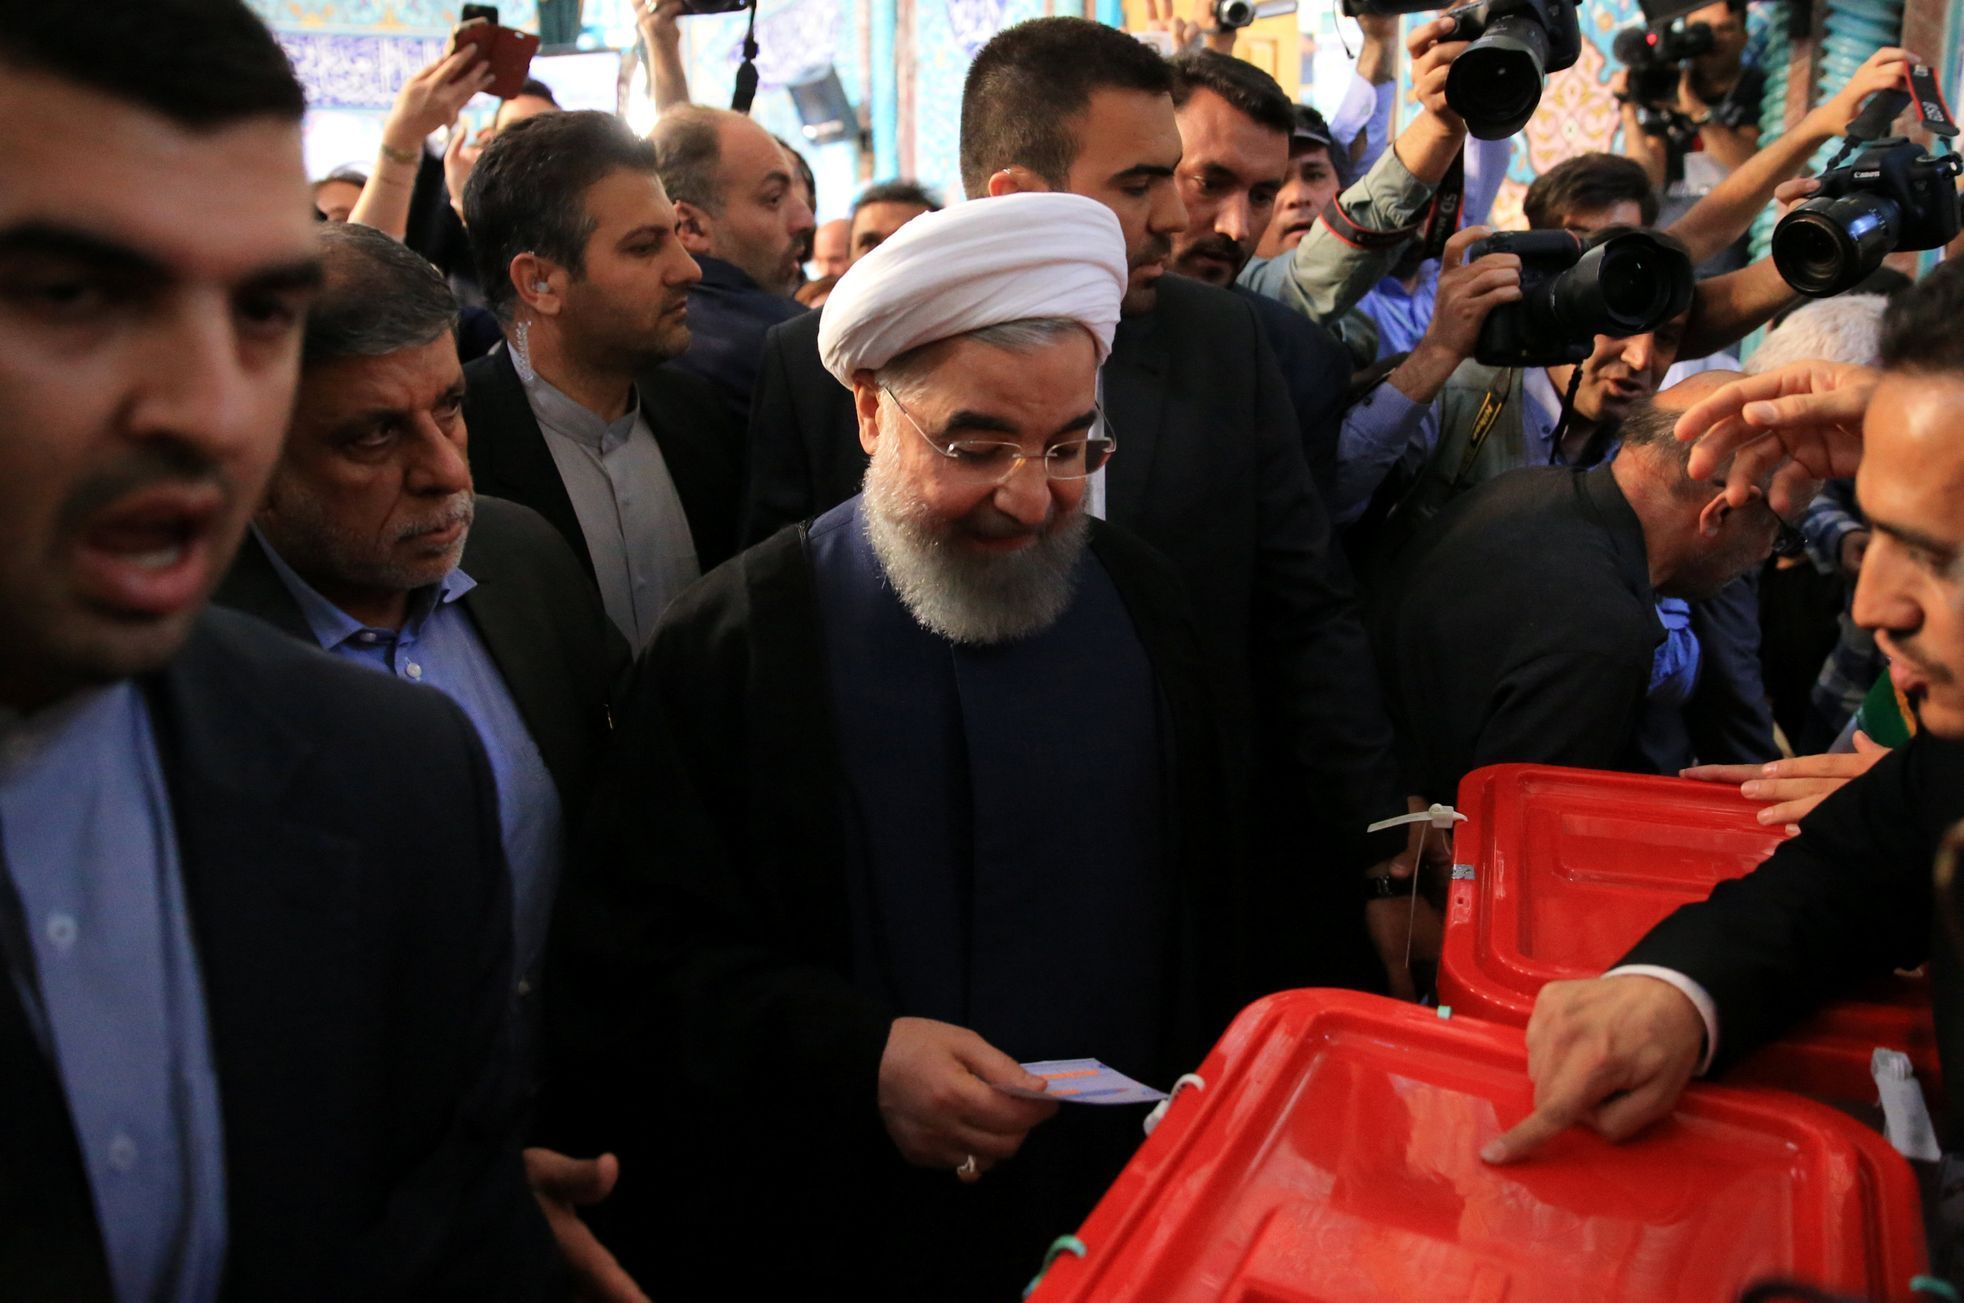 Prezidentské volby v Íránu